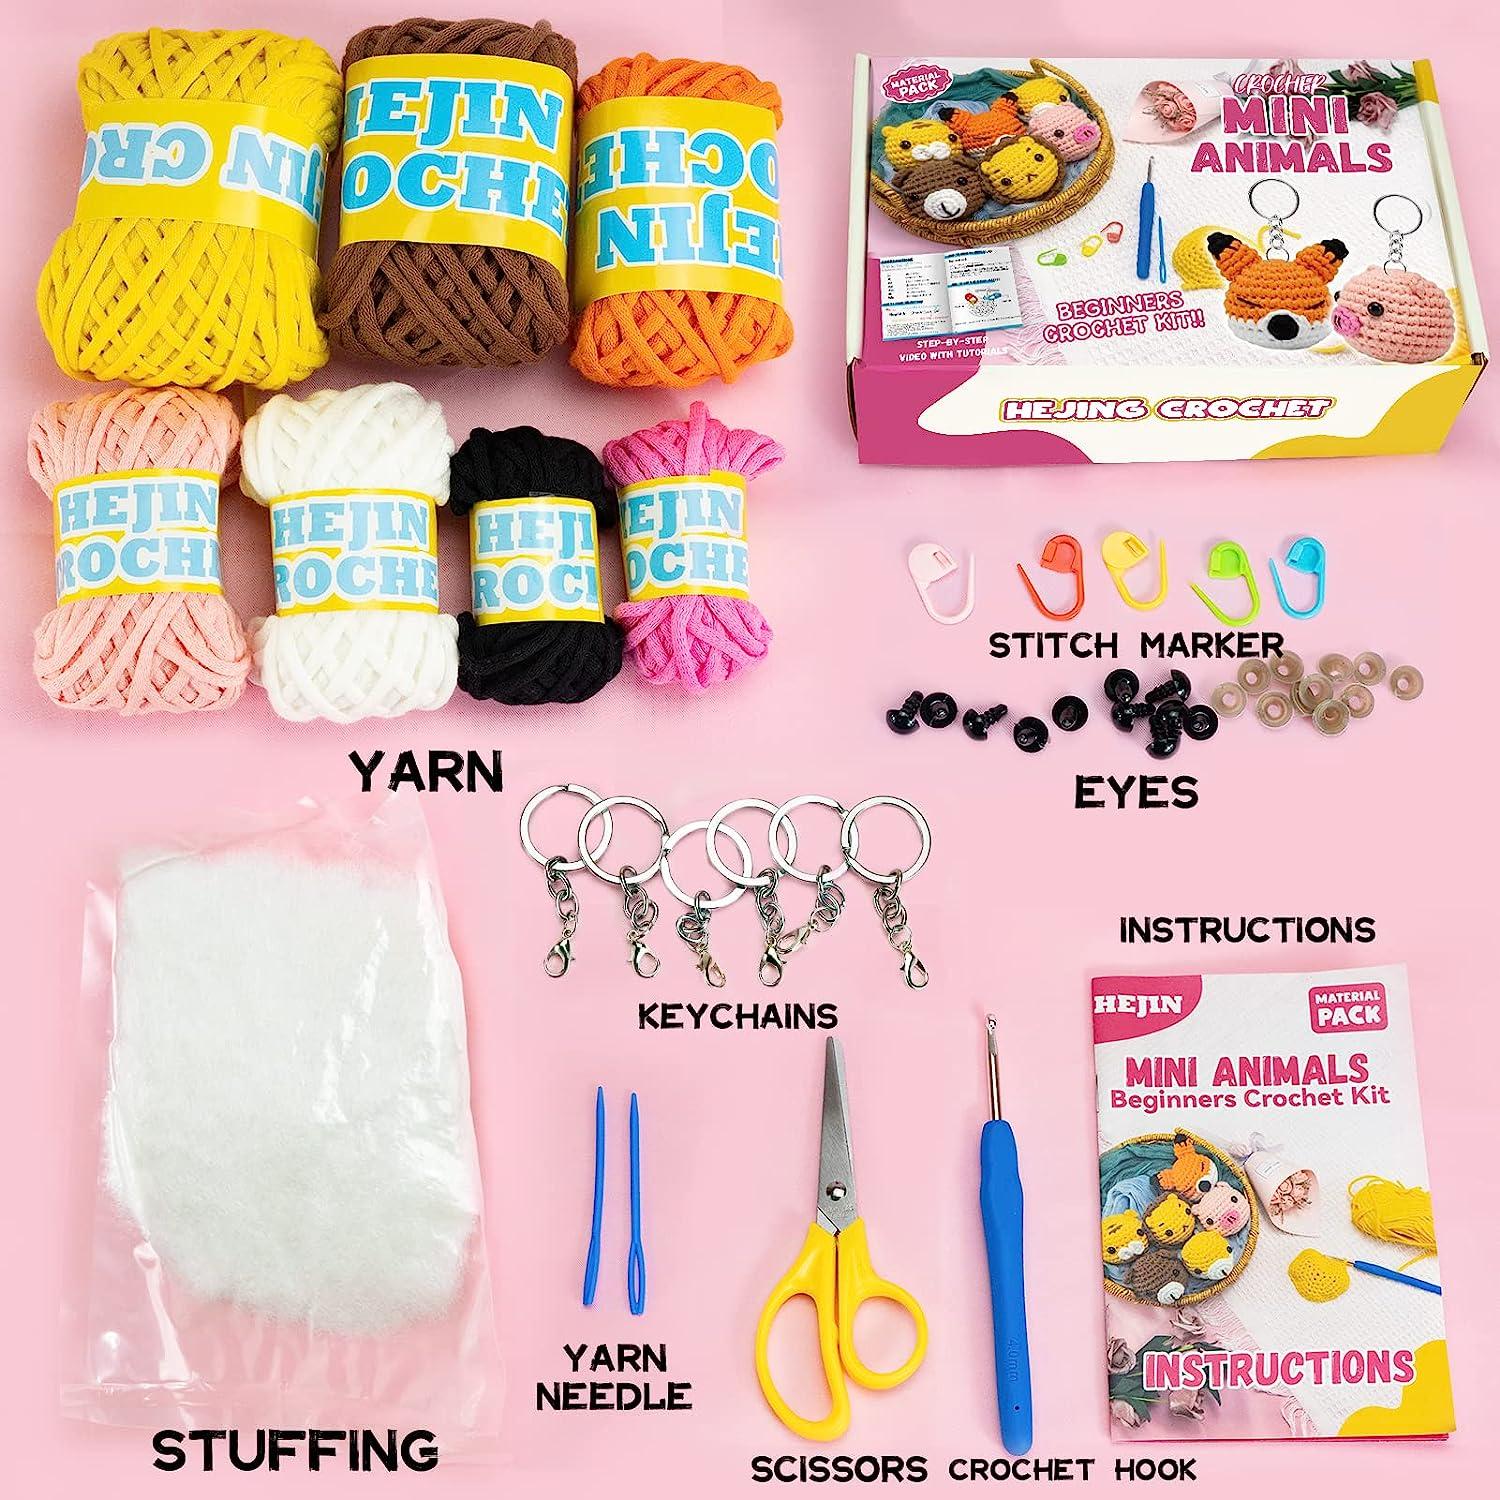 HEJIN Crochet Kit for Beginners, 6 PCS Crochet Animal Kit for